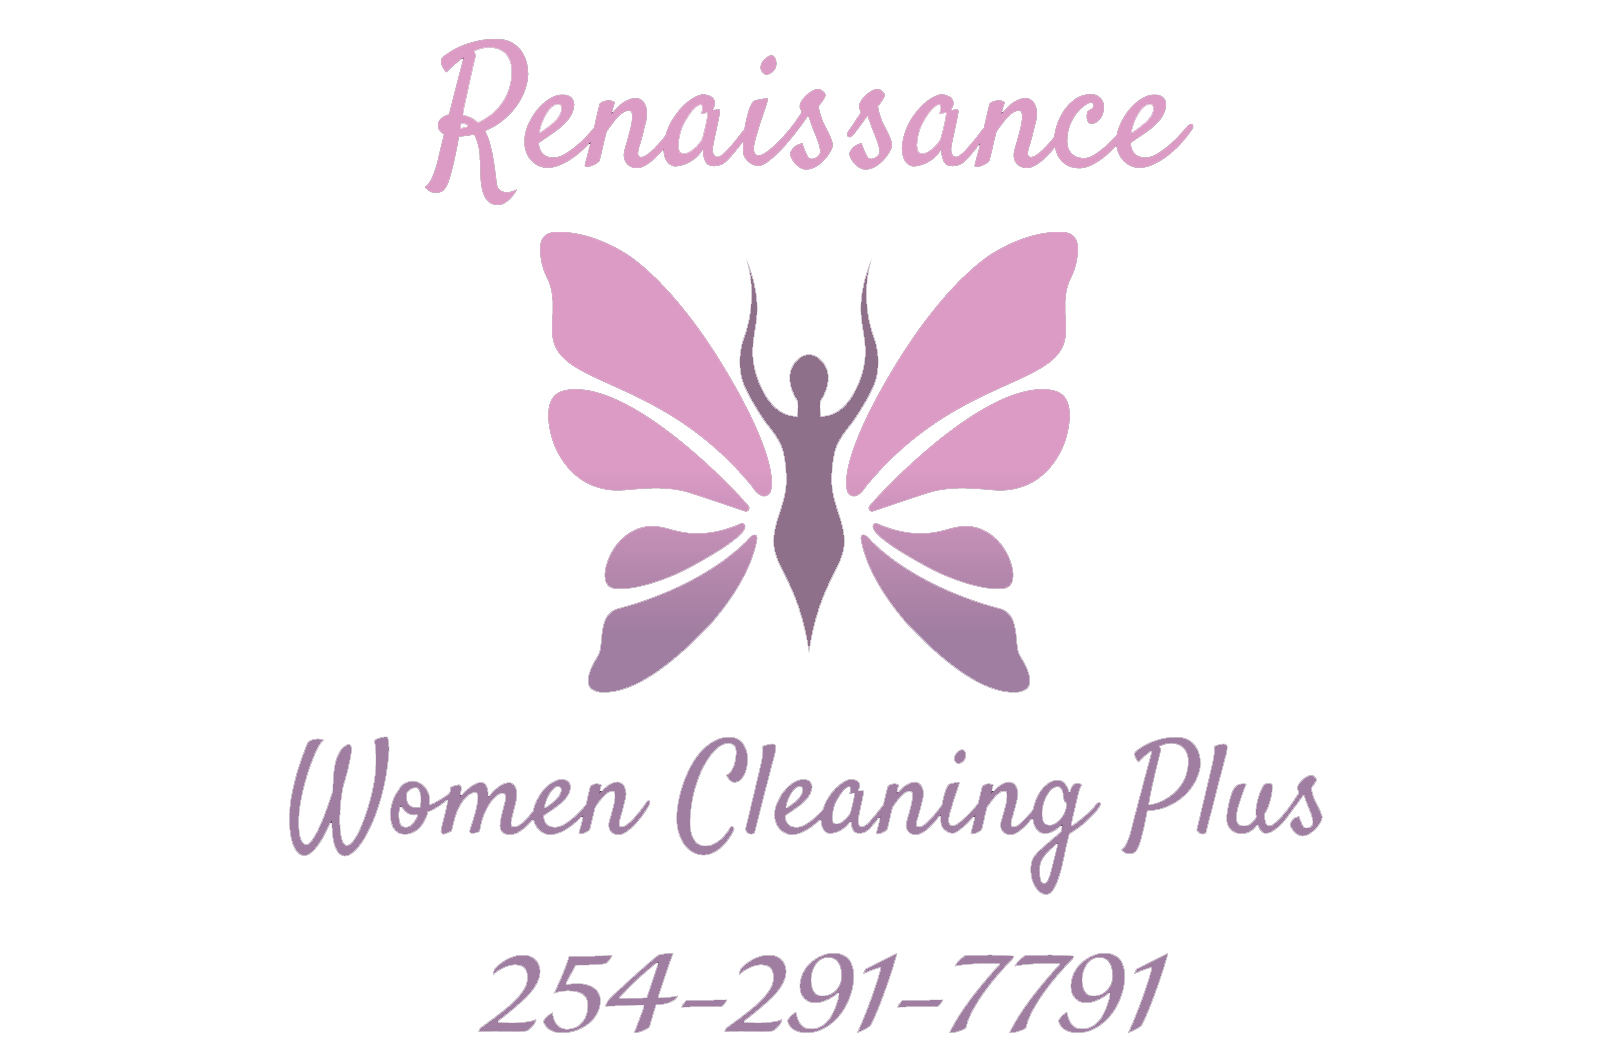 Renaissance Women Cleaning Plus